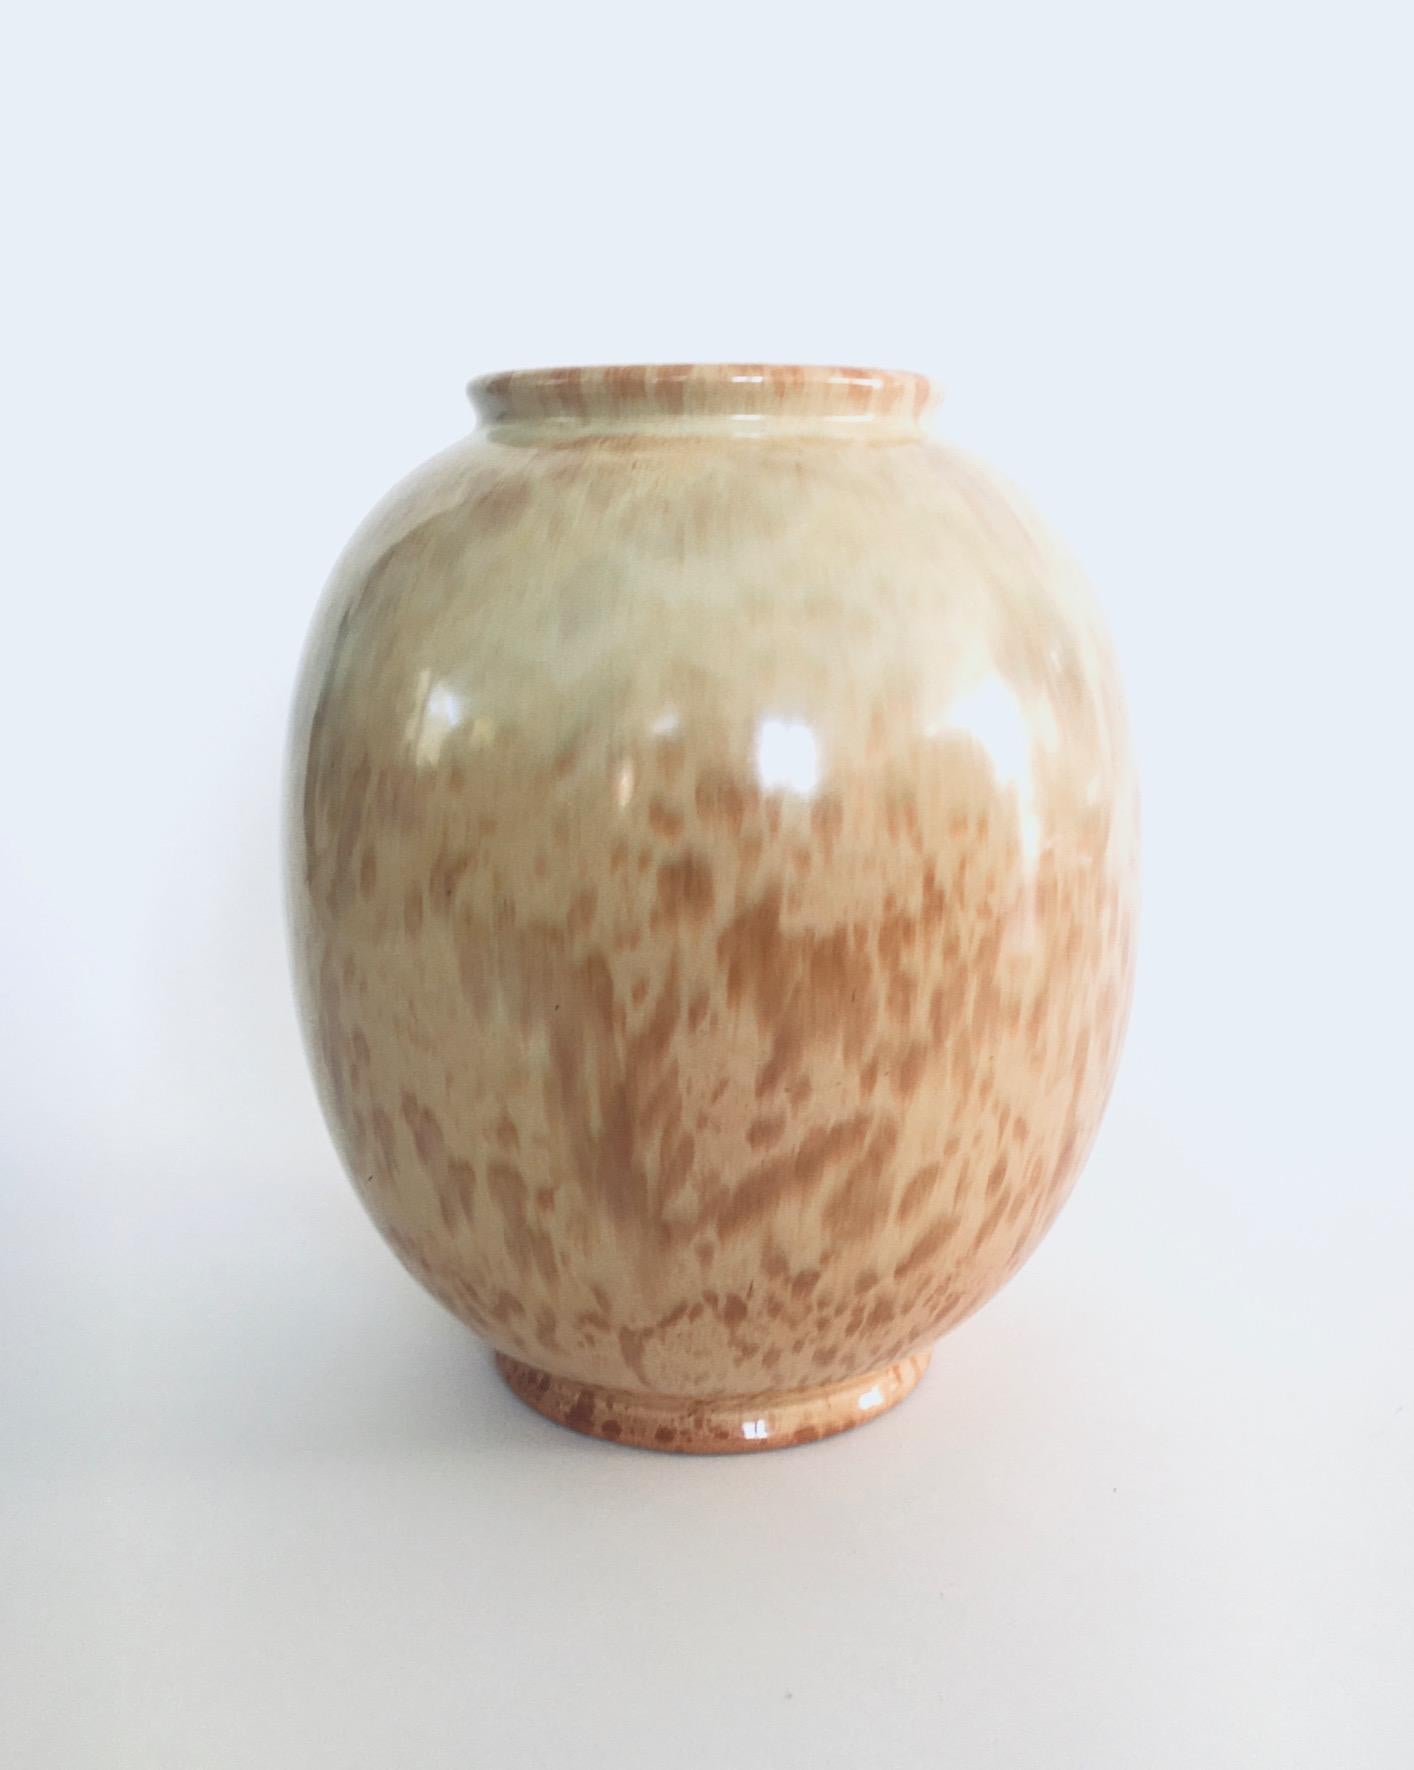 Ceramic RUBRA Vase by Wim Visser for Petrus Regout Maastricht, Netherlands 1954 For Sale